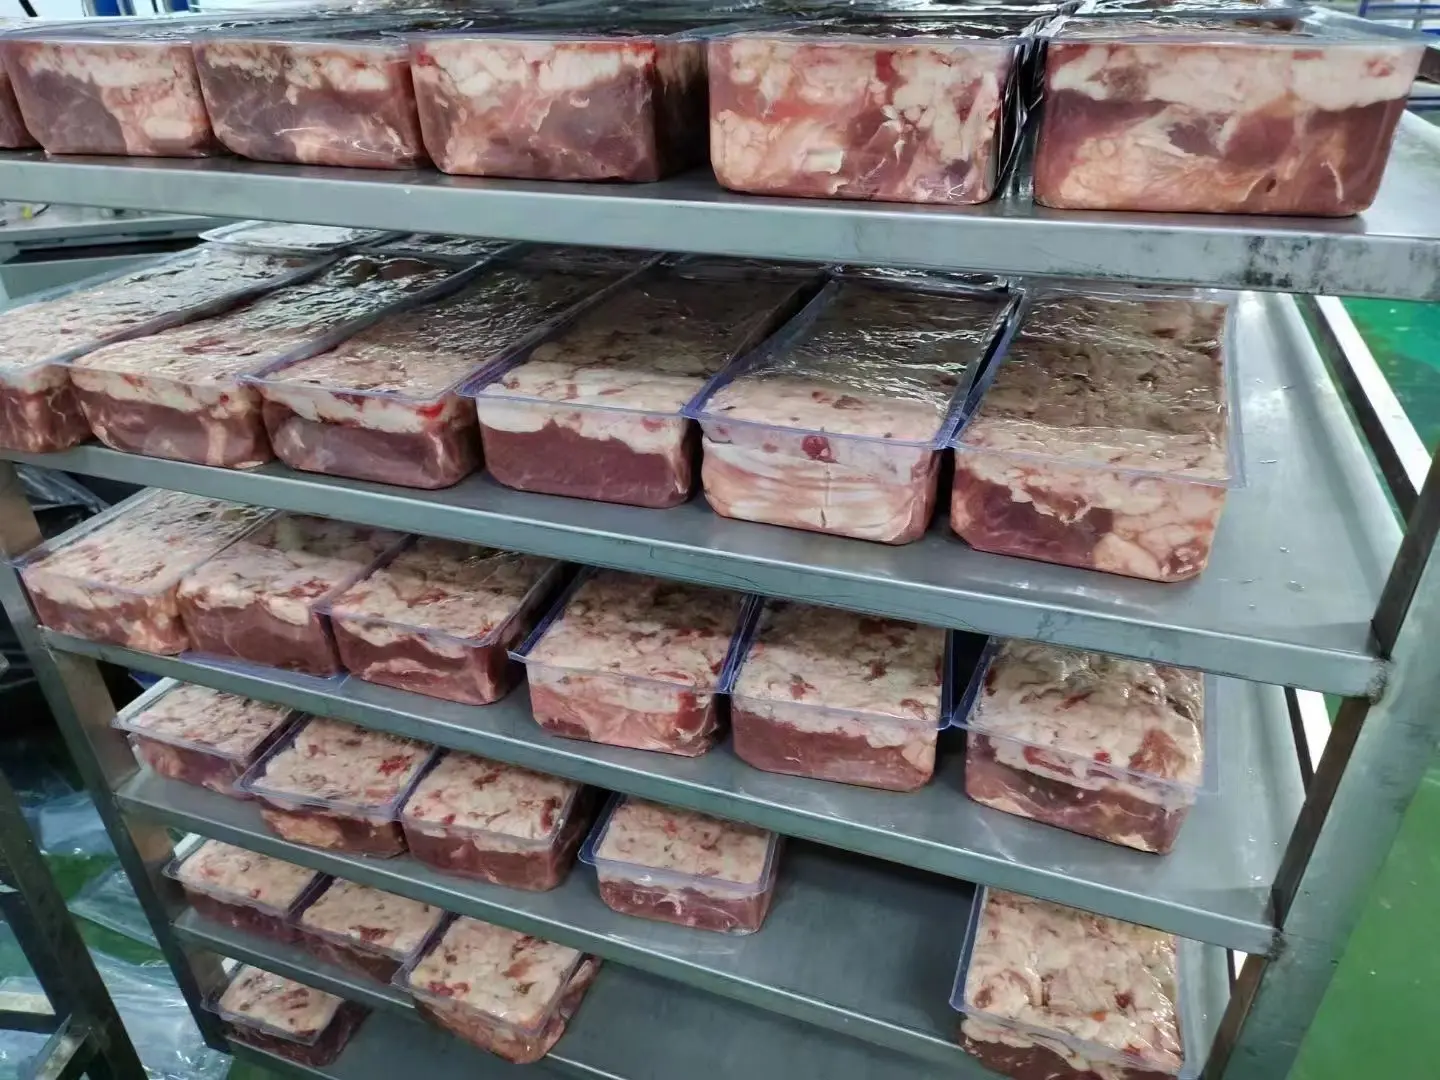 Emballage de brique de viande fait de film plastique de PVC/PE